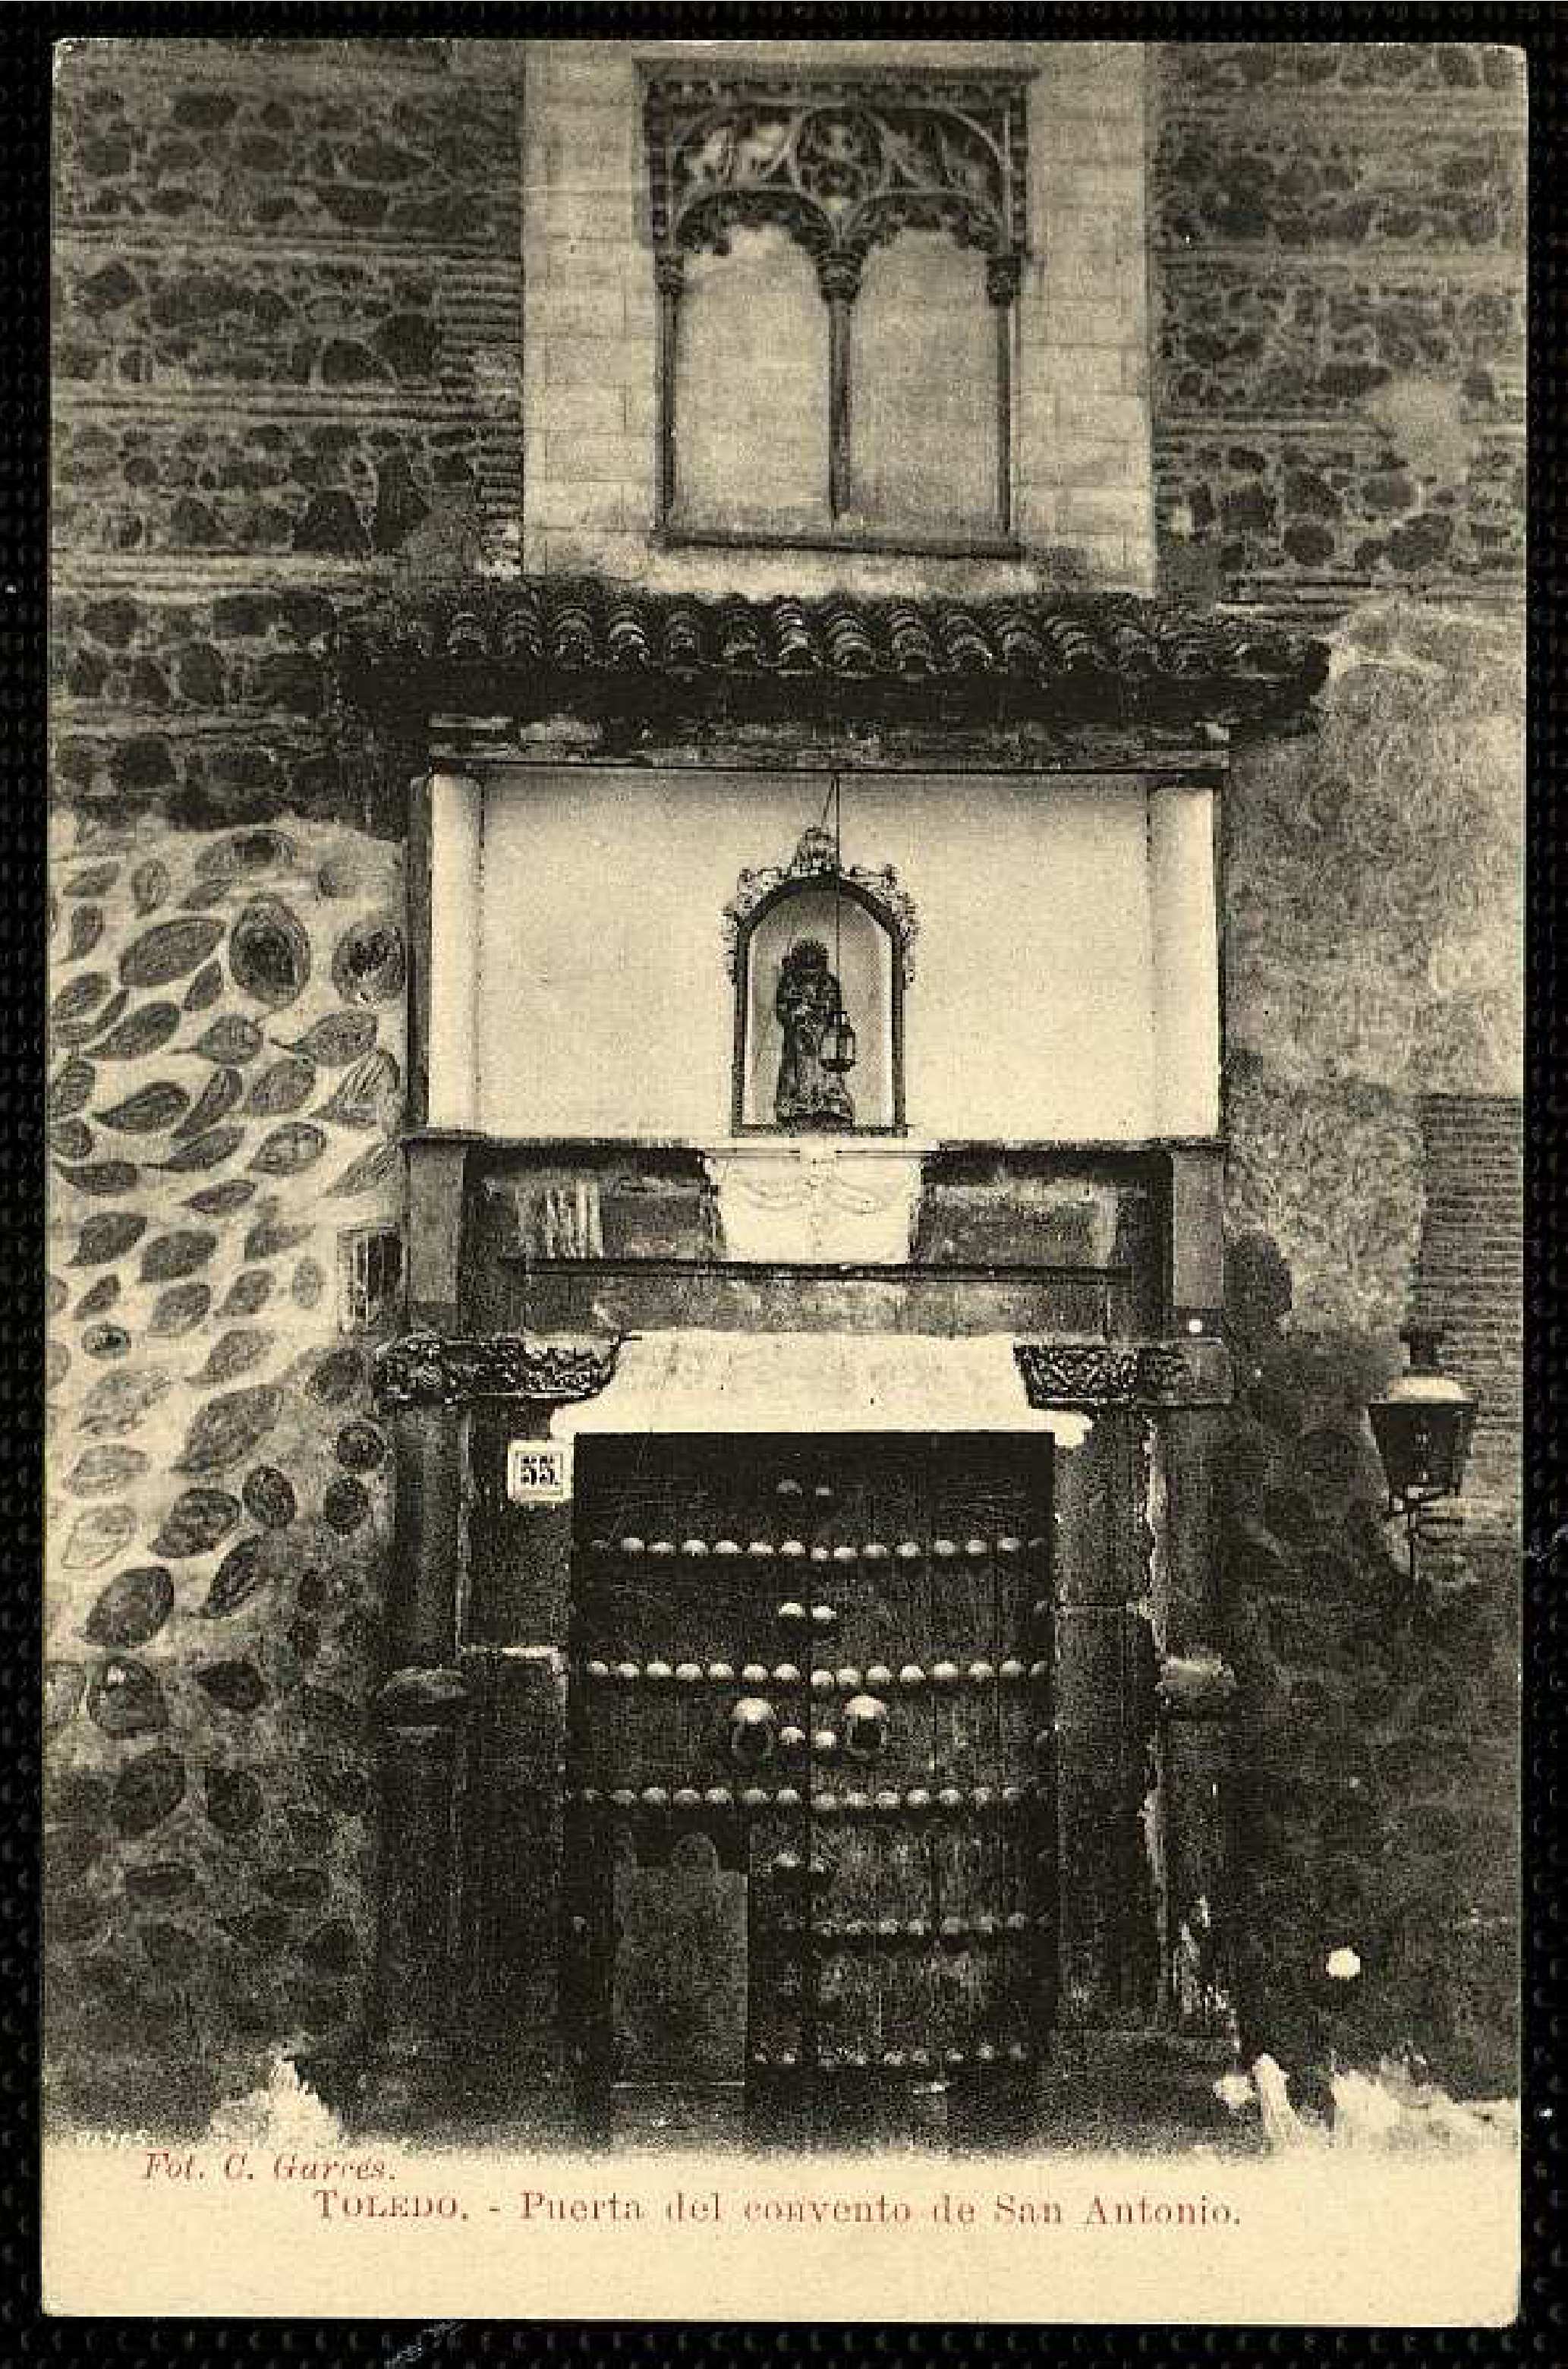 Toledo. Puerta del convento de San Antonio. Fot. C. Garcés. Archivo Municipal de Toledo, signatura P-1647